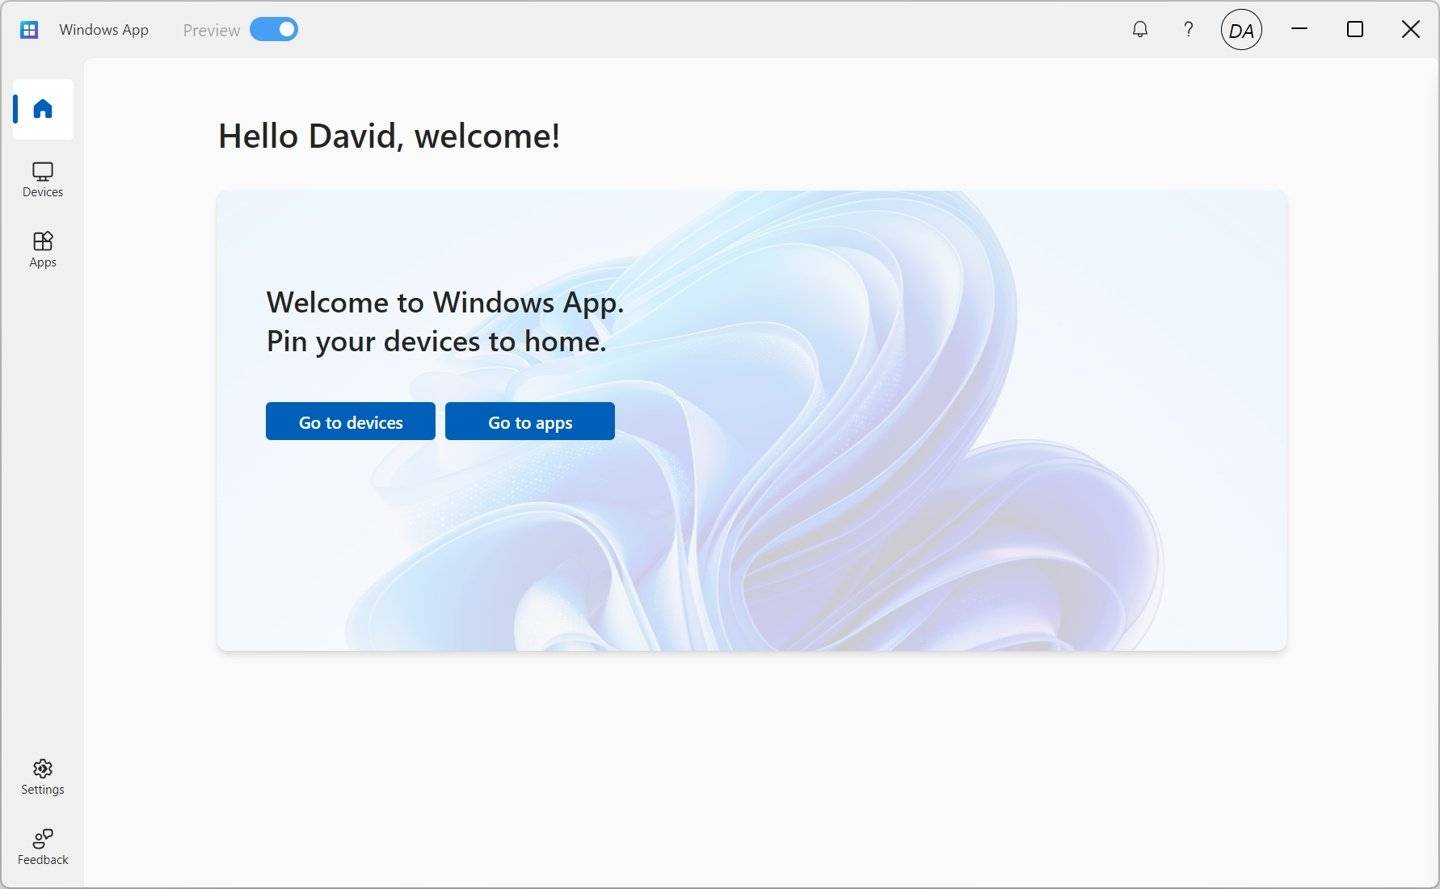 微软宣布推出「Windows App」，iPhone / iPad / Mac 可以随时远程连上 PC